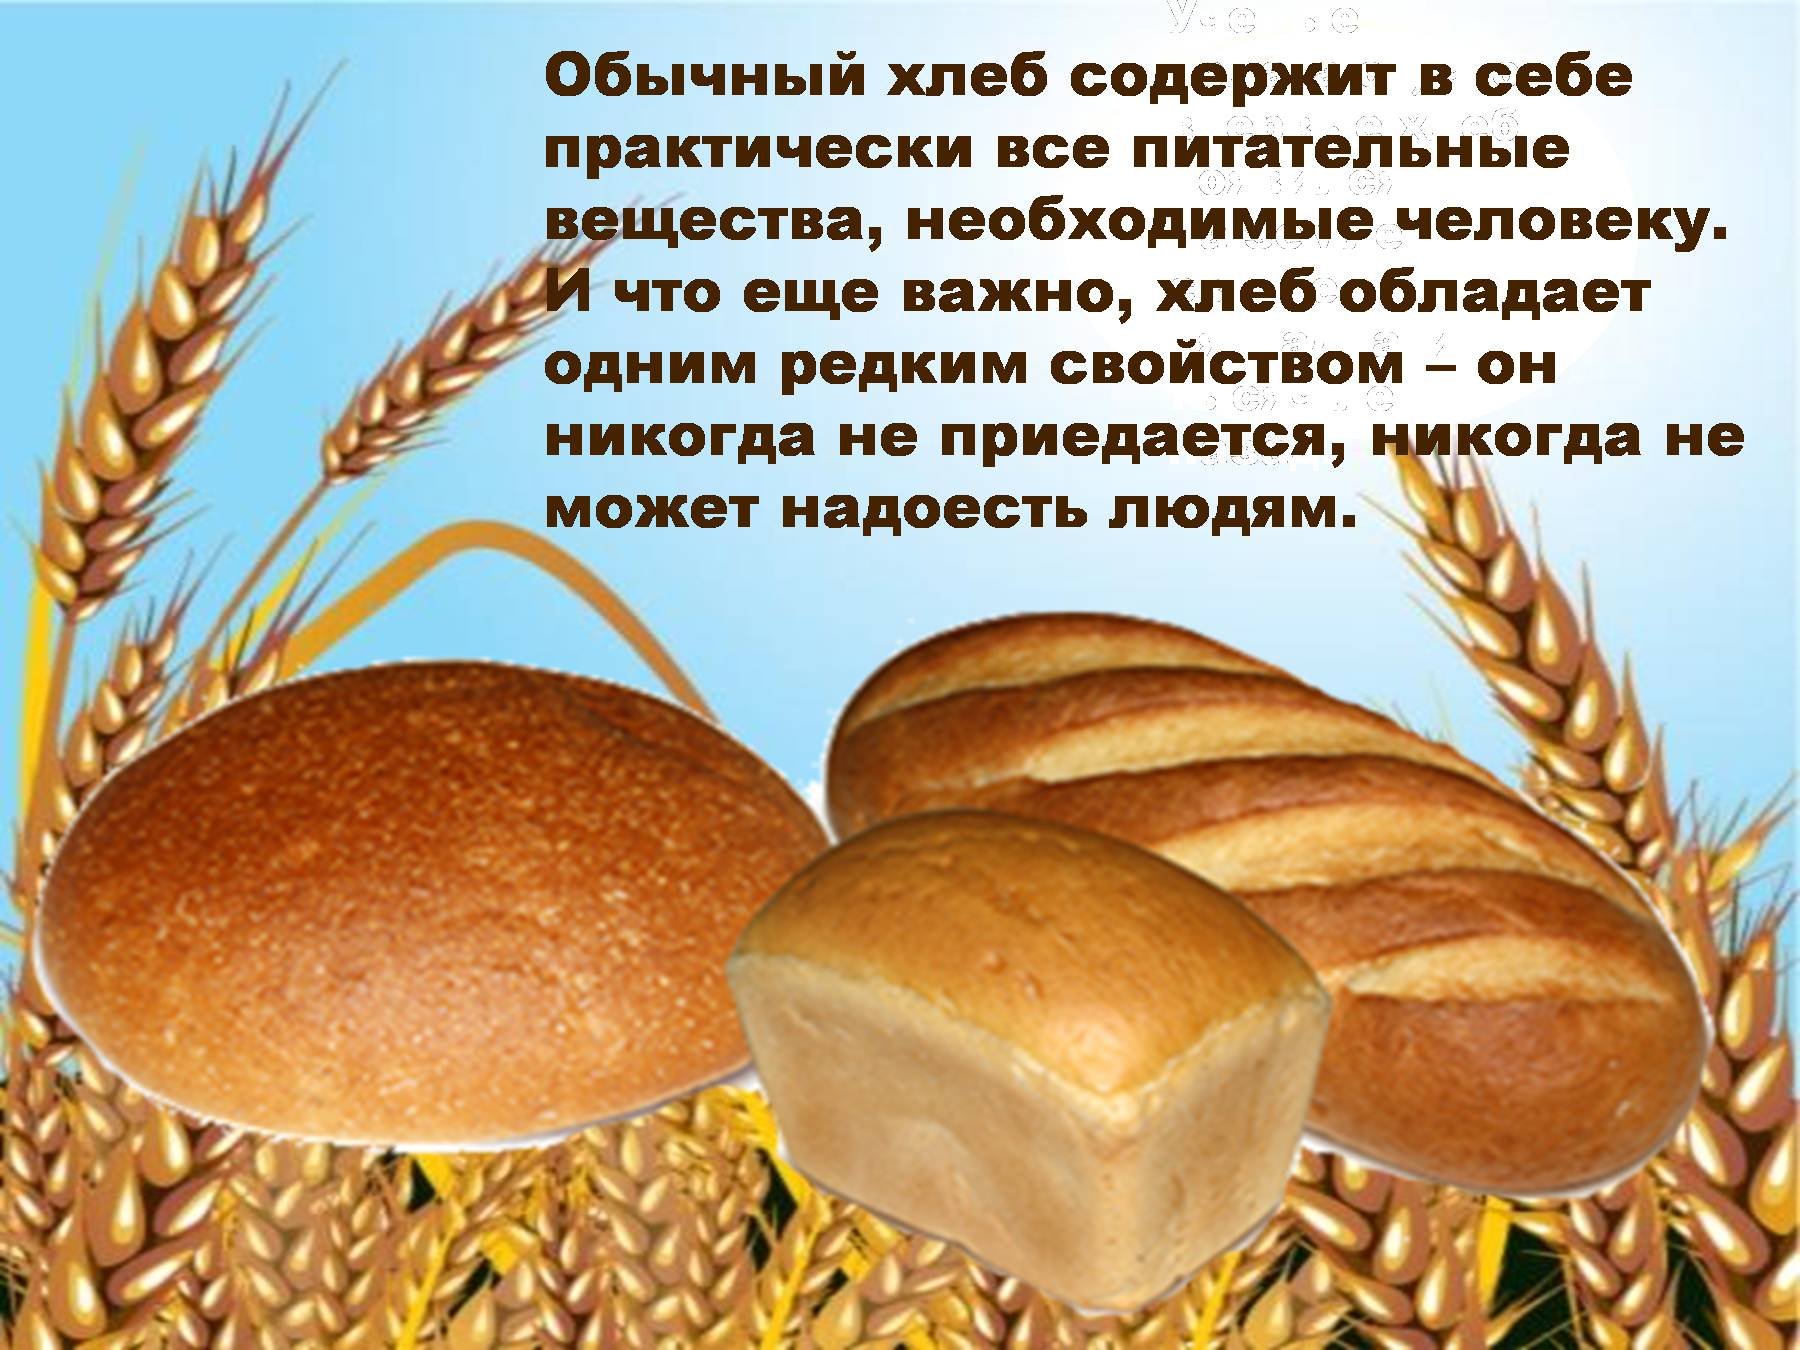 откуда хлеб пришел картинки для детей